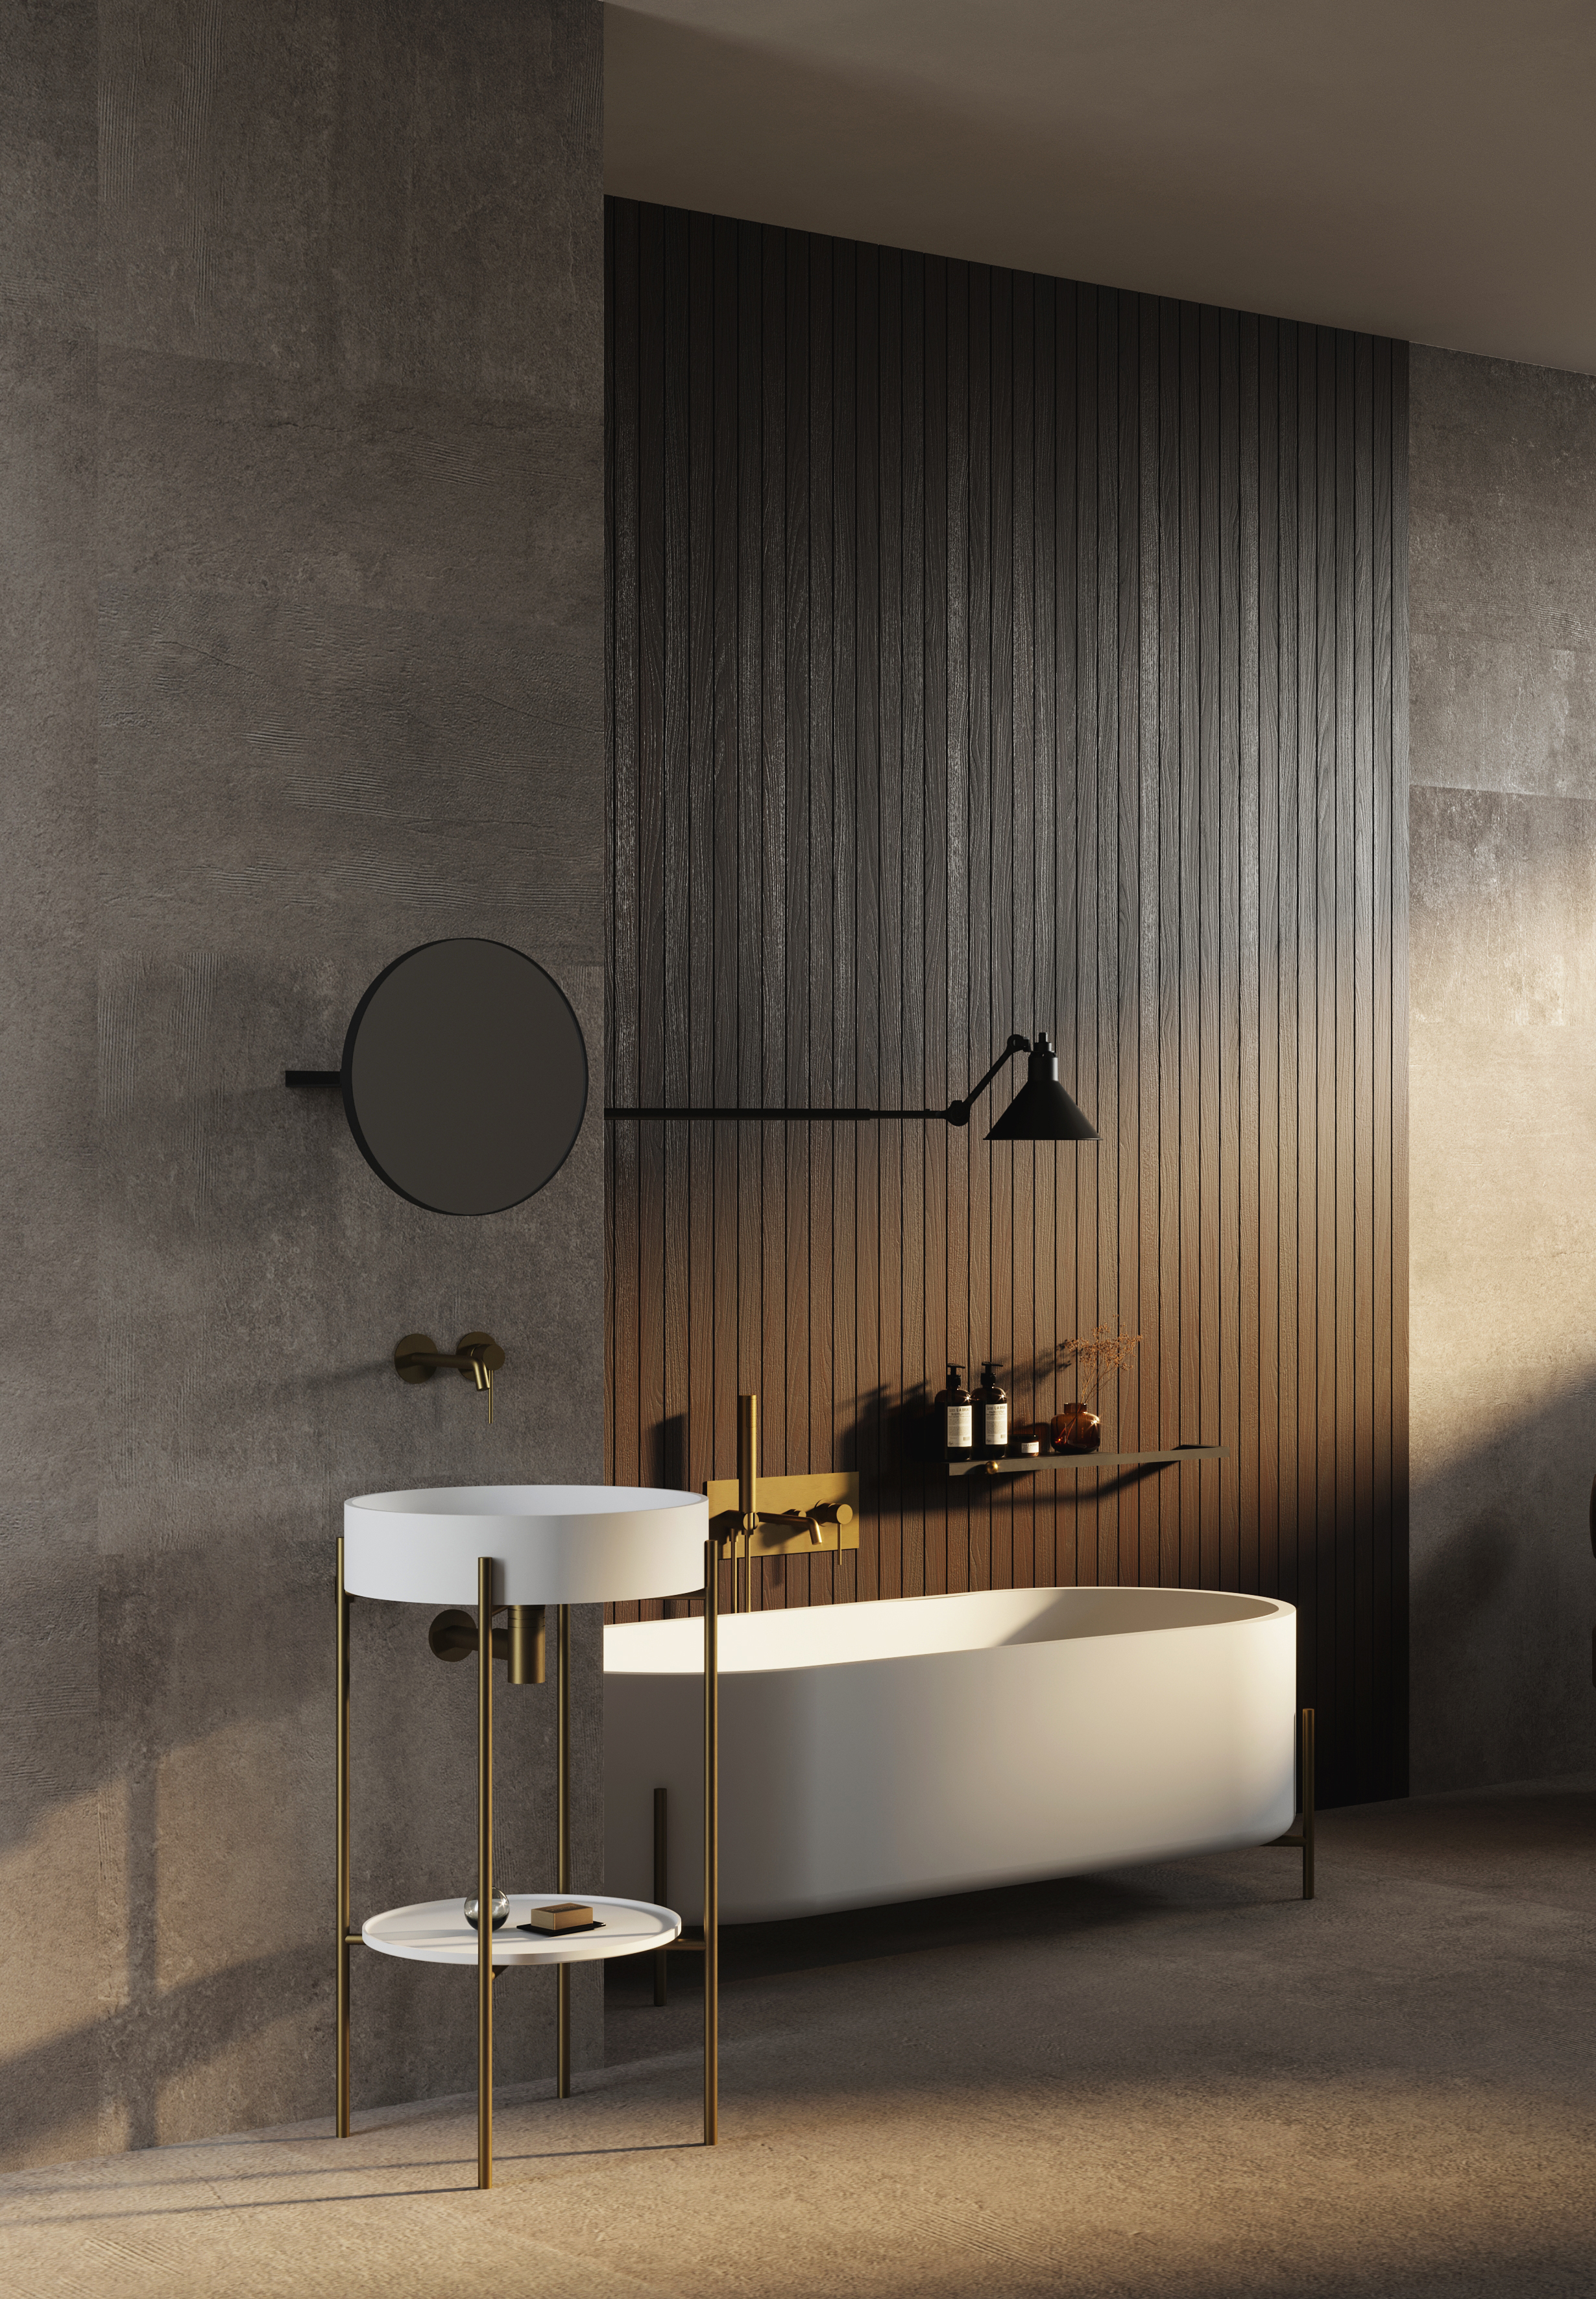 För italienska EX.t har Norm Architects skapat kollektionen Stand med ovala badkaret och handfatskonsolen, som finns för både runt och ovalt handfat. Geometriskt rent med fin balans mellan funktion och form. Spegeln heter Arco. En lyxig miljö med träinslag. Foto Ex.t